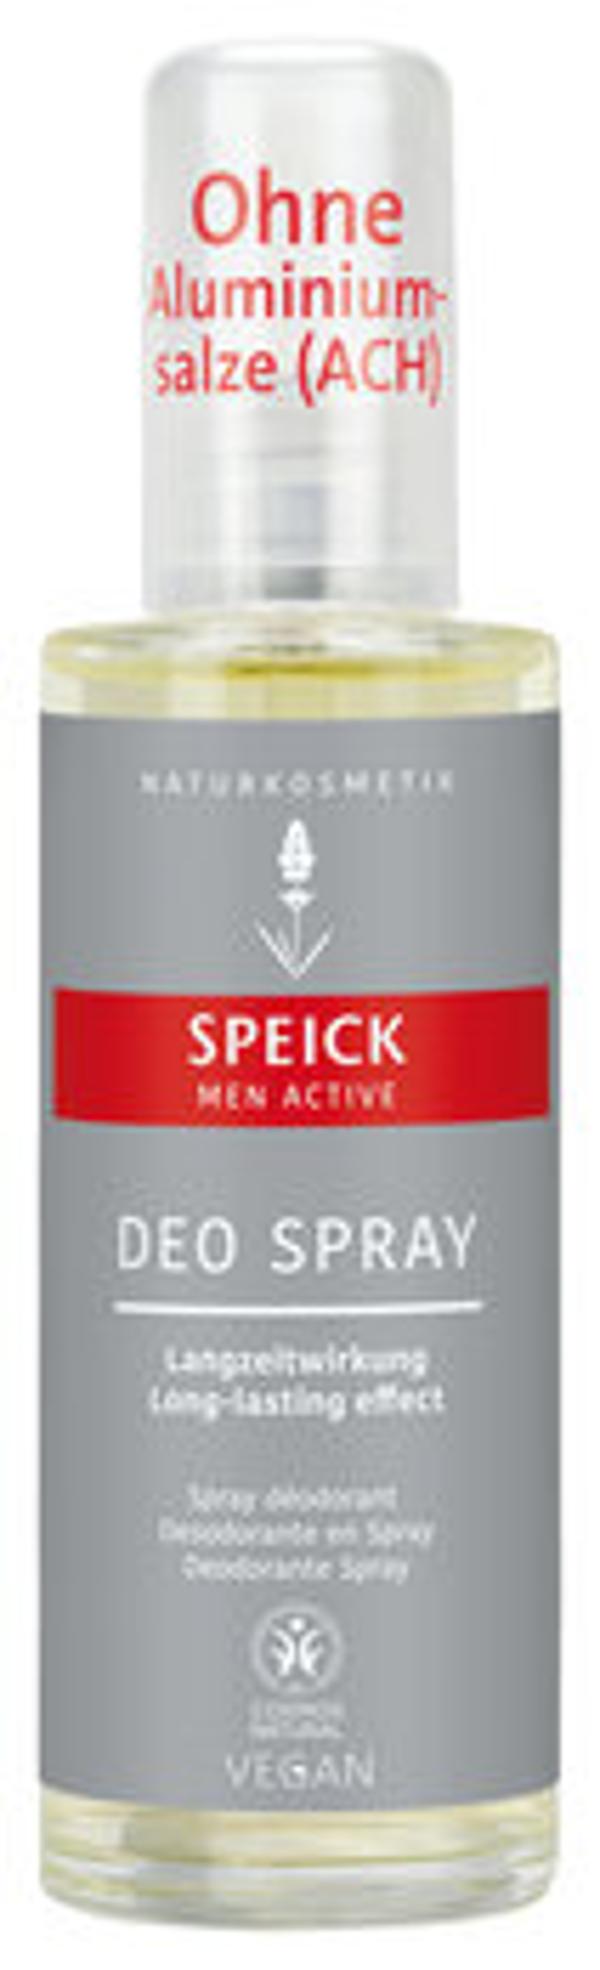 Produktfoto zu Men Active Deo Spray